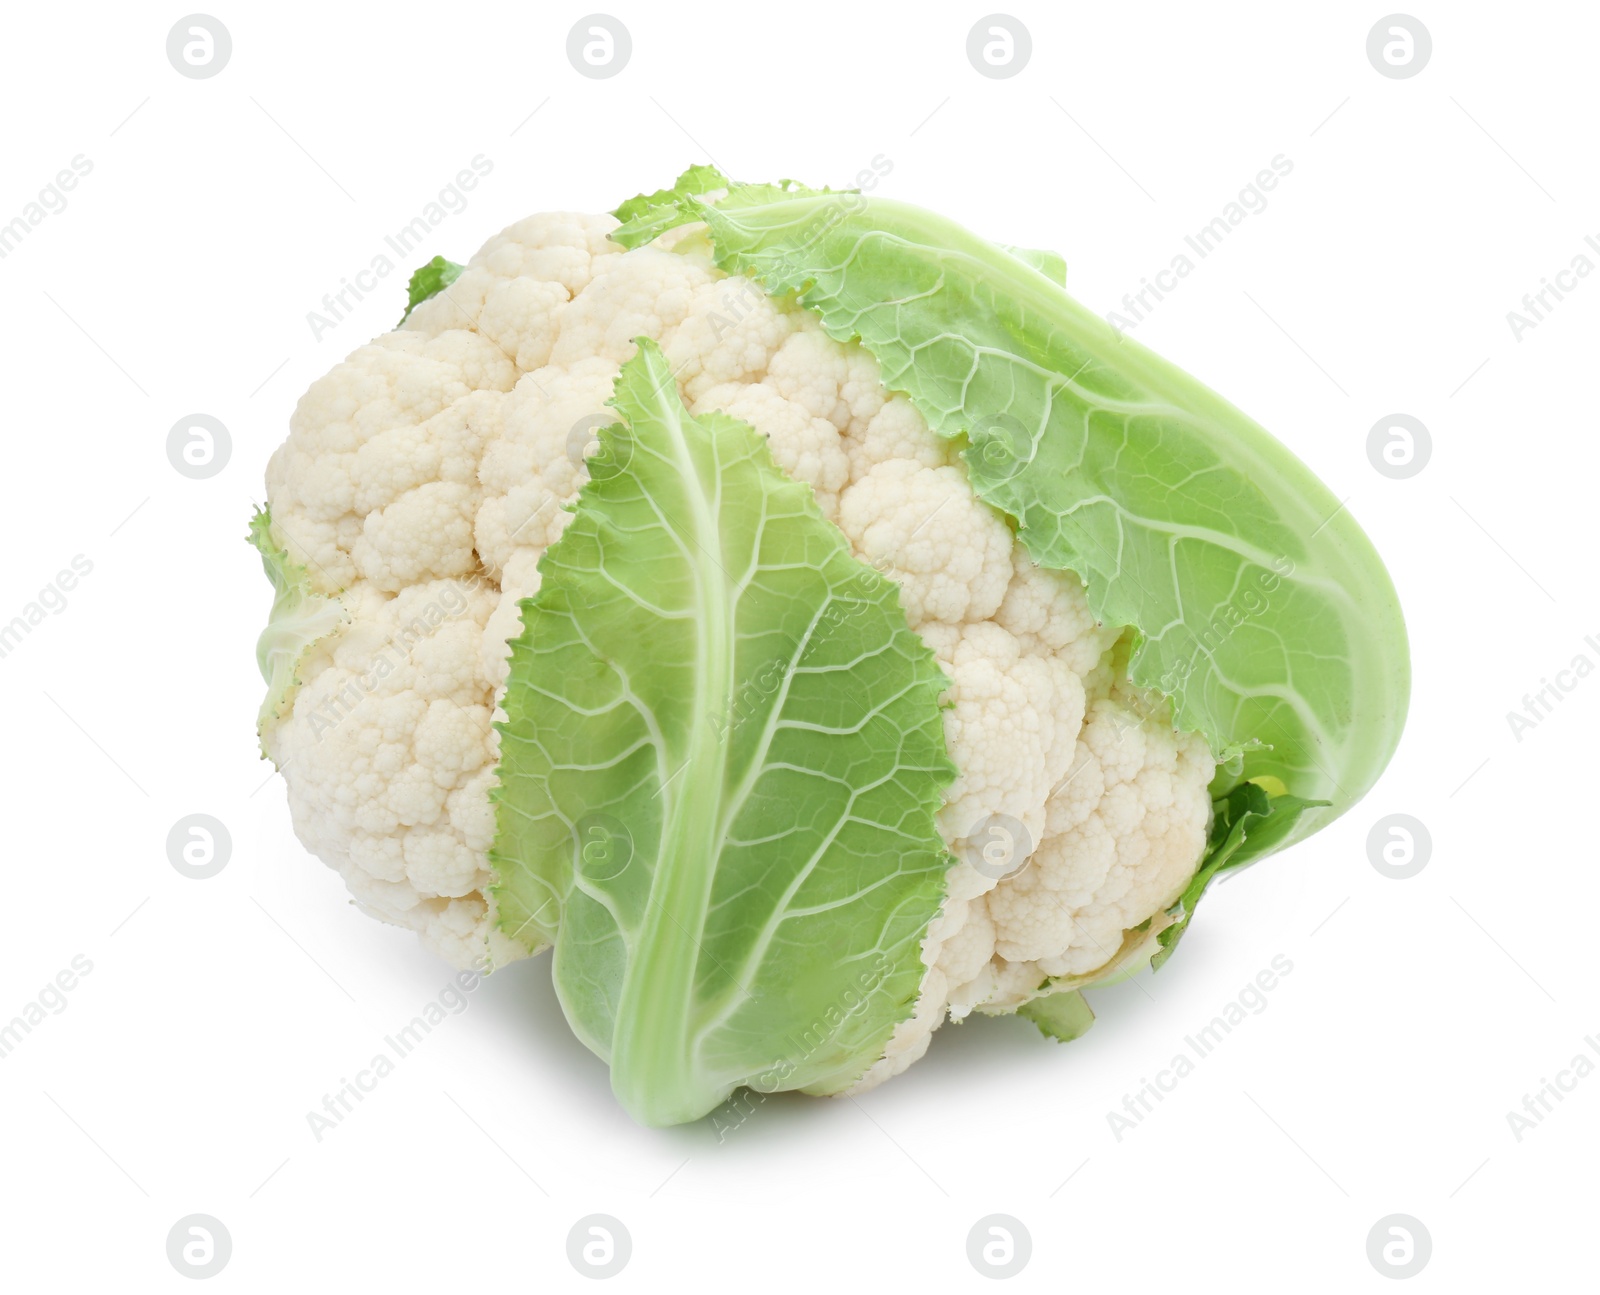 Photo of Whole fresh raw cauliflower on white background